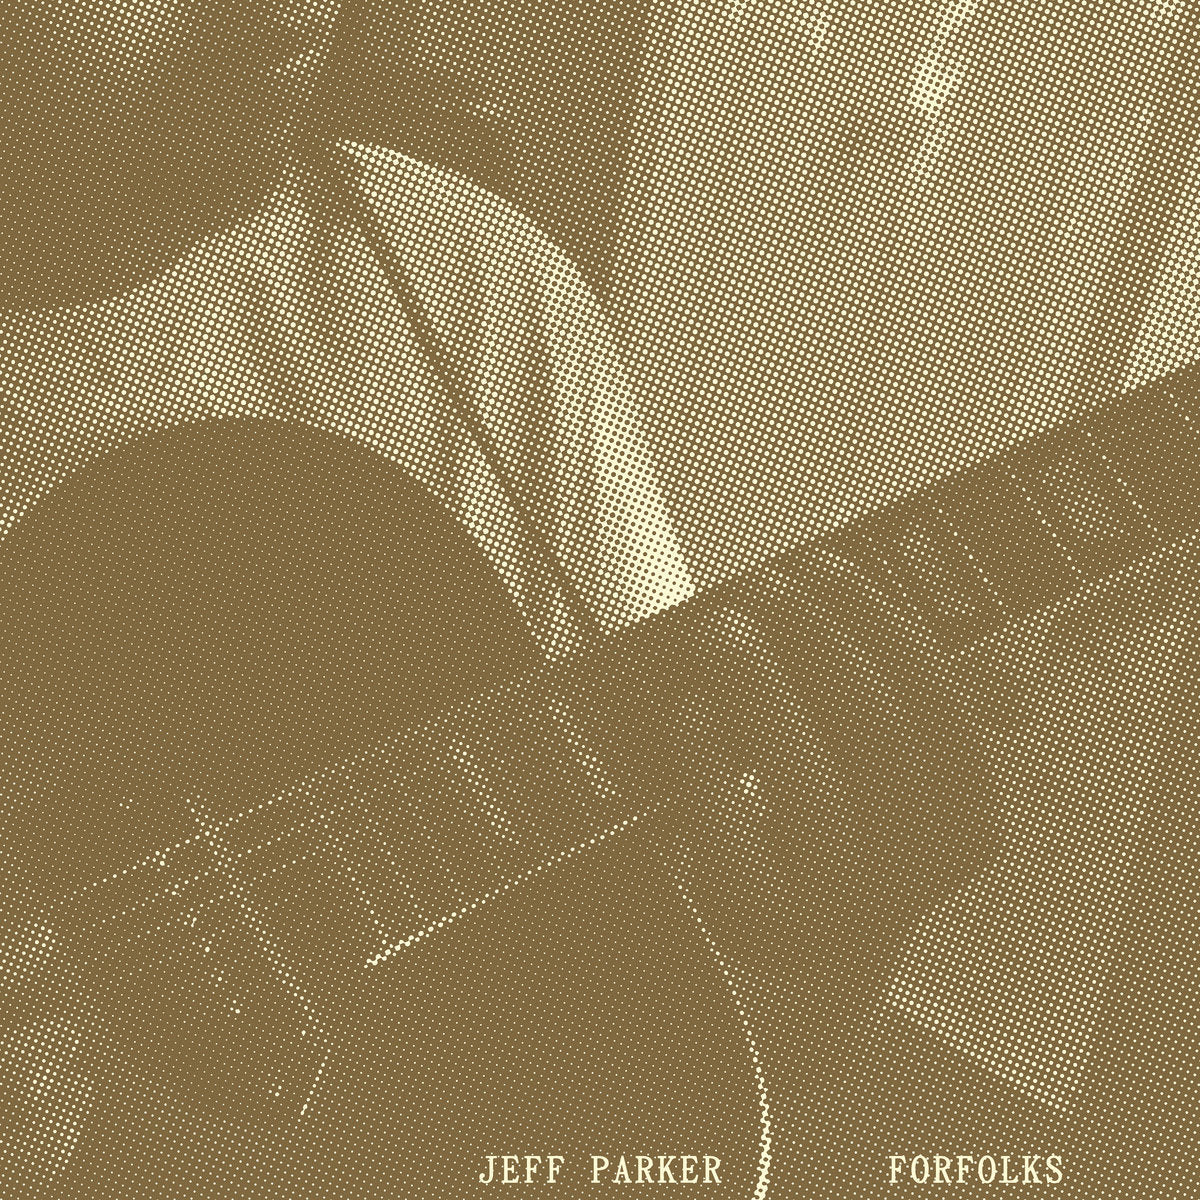 Jeff Parker - Forfolks [Black Vinyl]